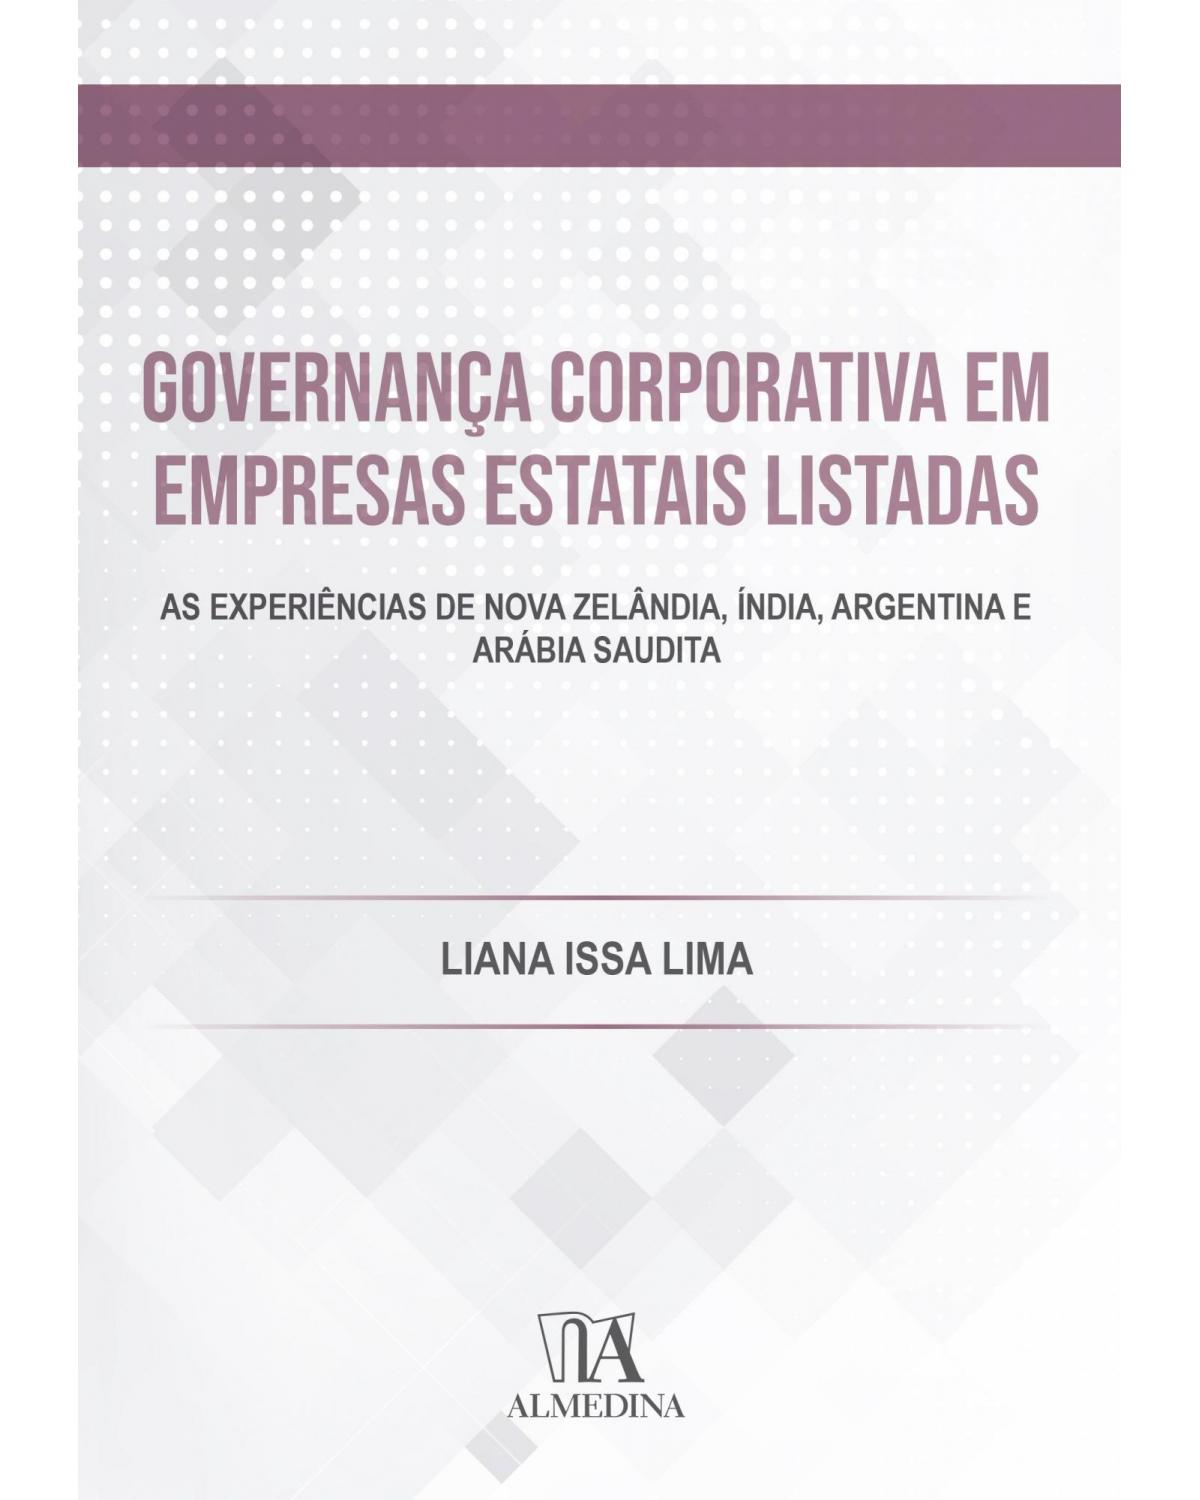 Governança corporativa em empresas estatais listadas - as experiências de Nova Zelândia, Índia, Argentina e Arábia Saudita - 1ª Edição | 2021